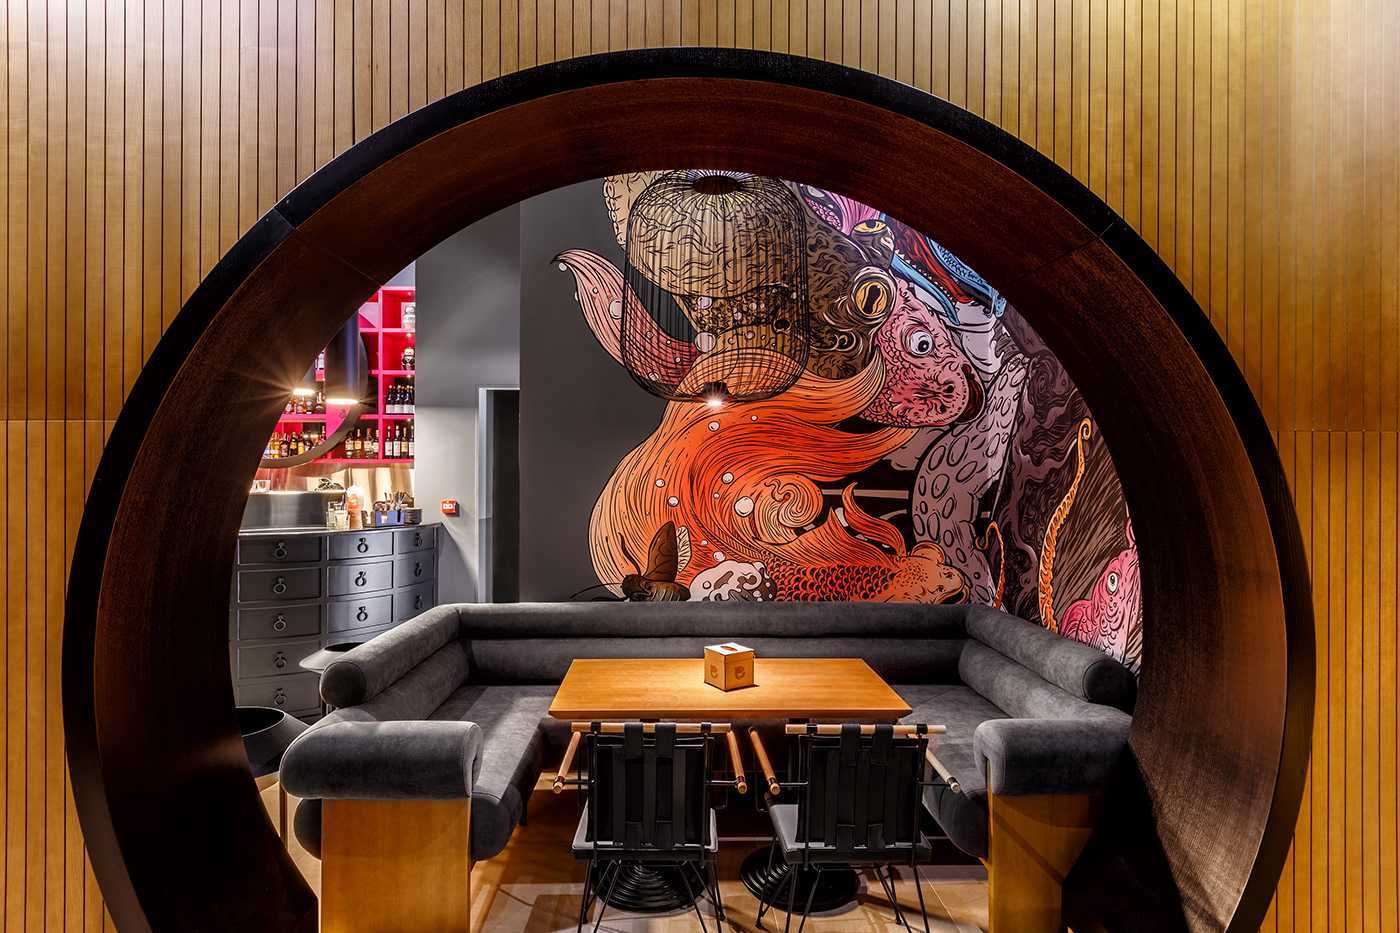 мебель для суши бара в японском стиле